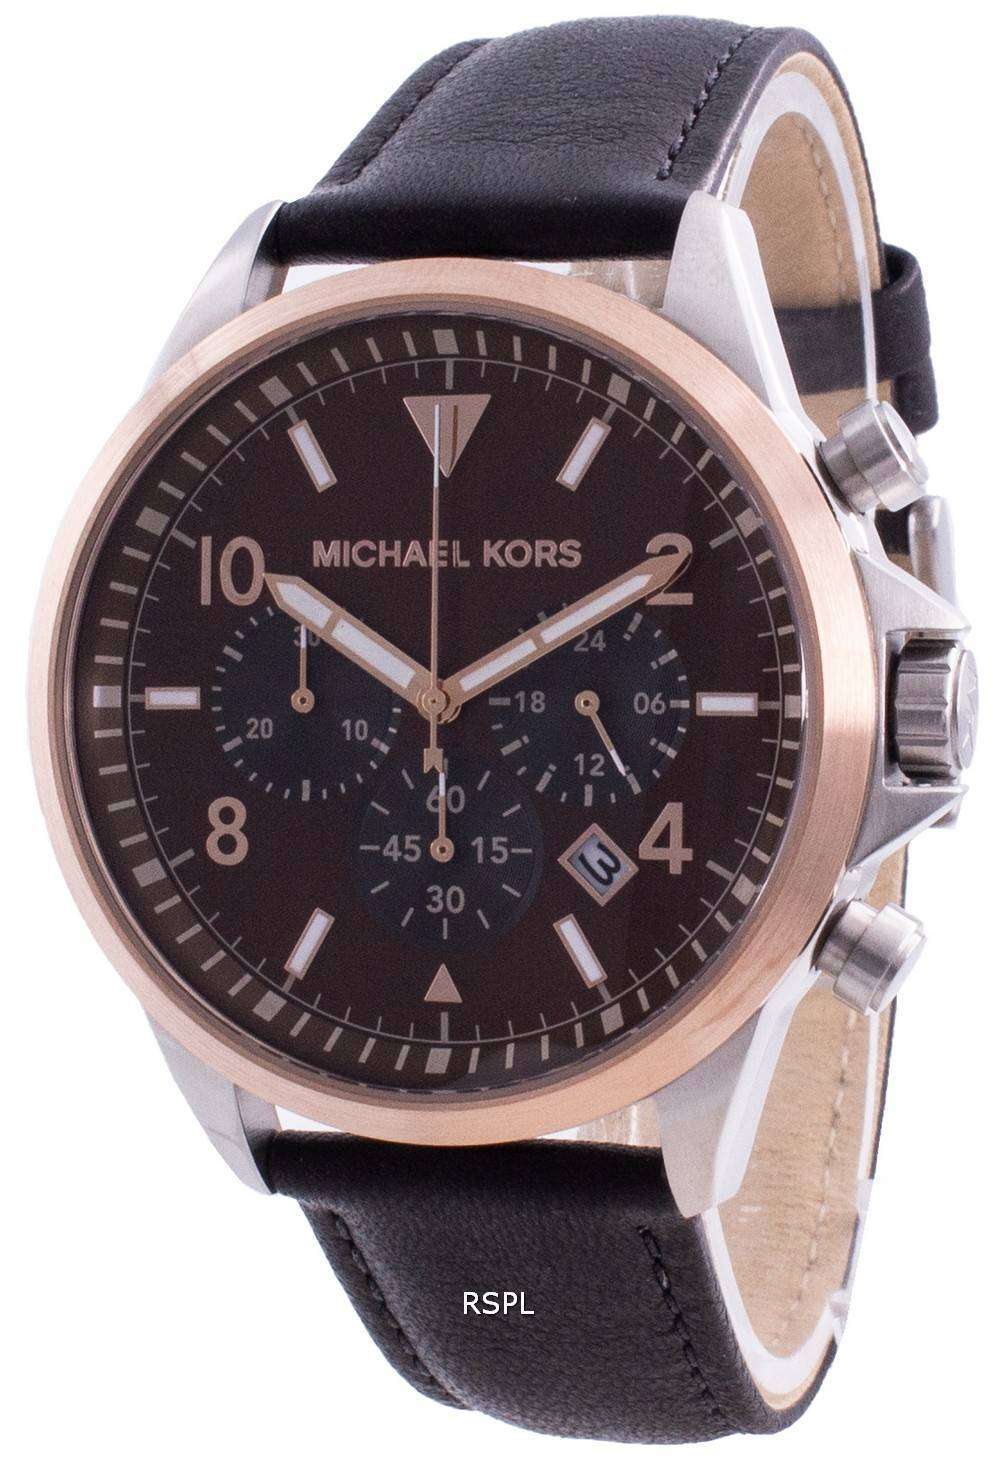 Buy Michael Kors Gage Brown Leather Analog Men Watch MK8785 Online in UAE   Sharaf DG